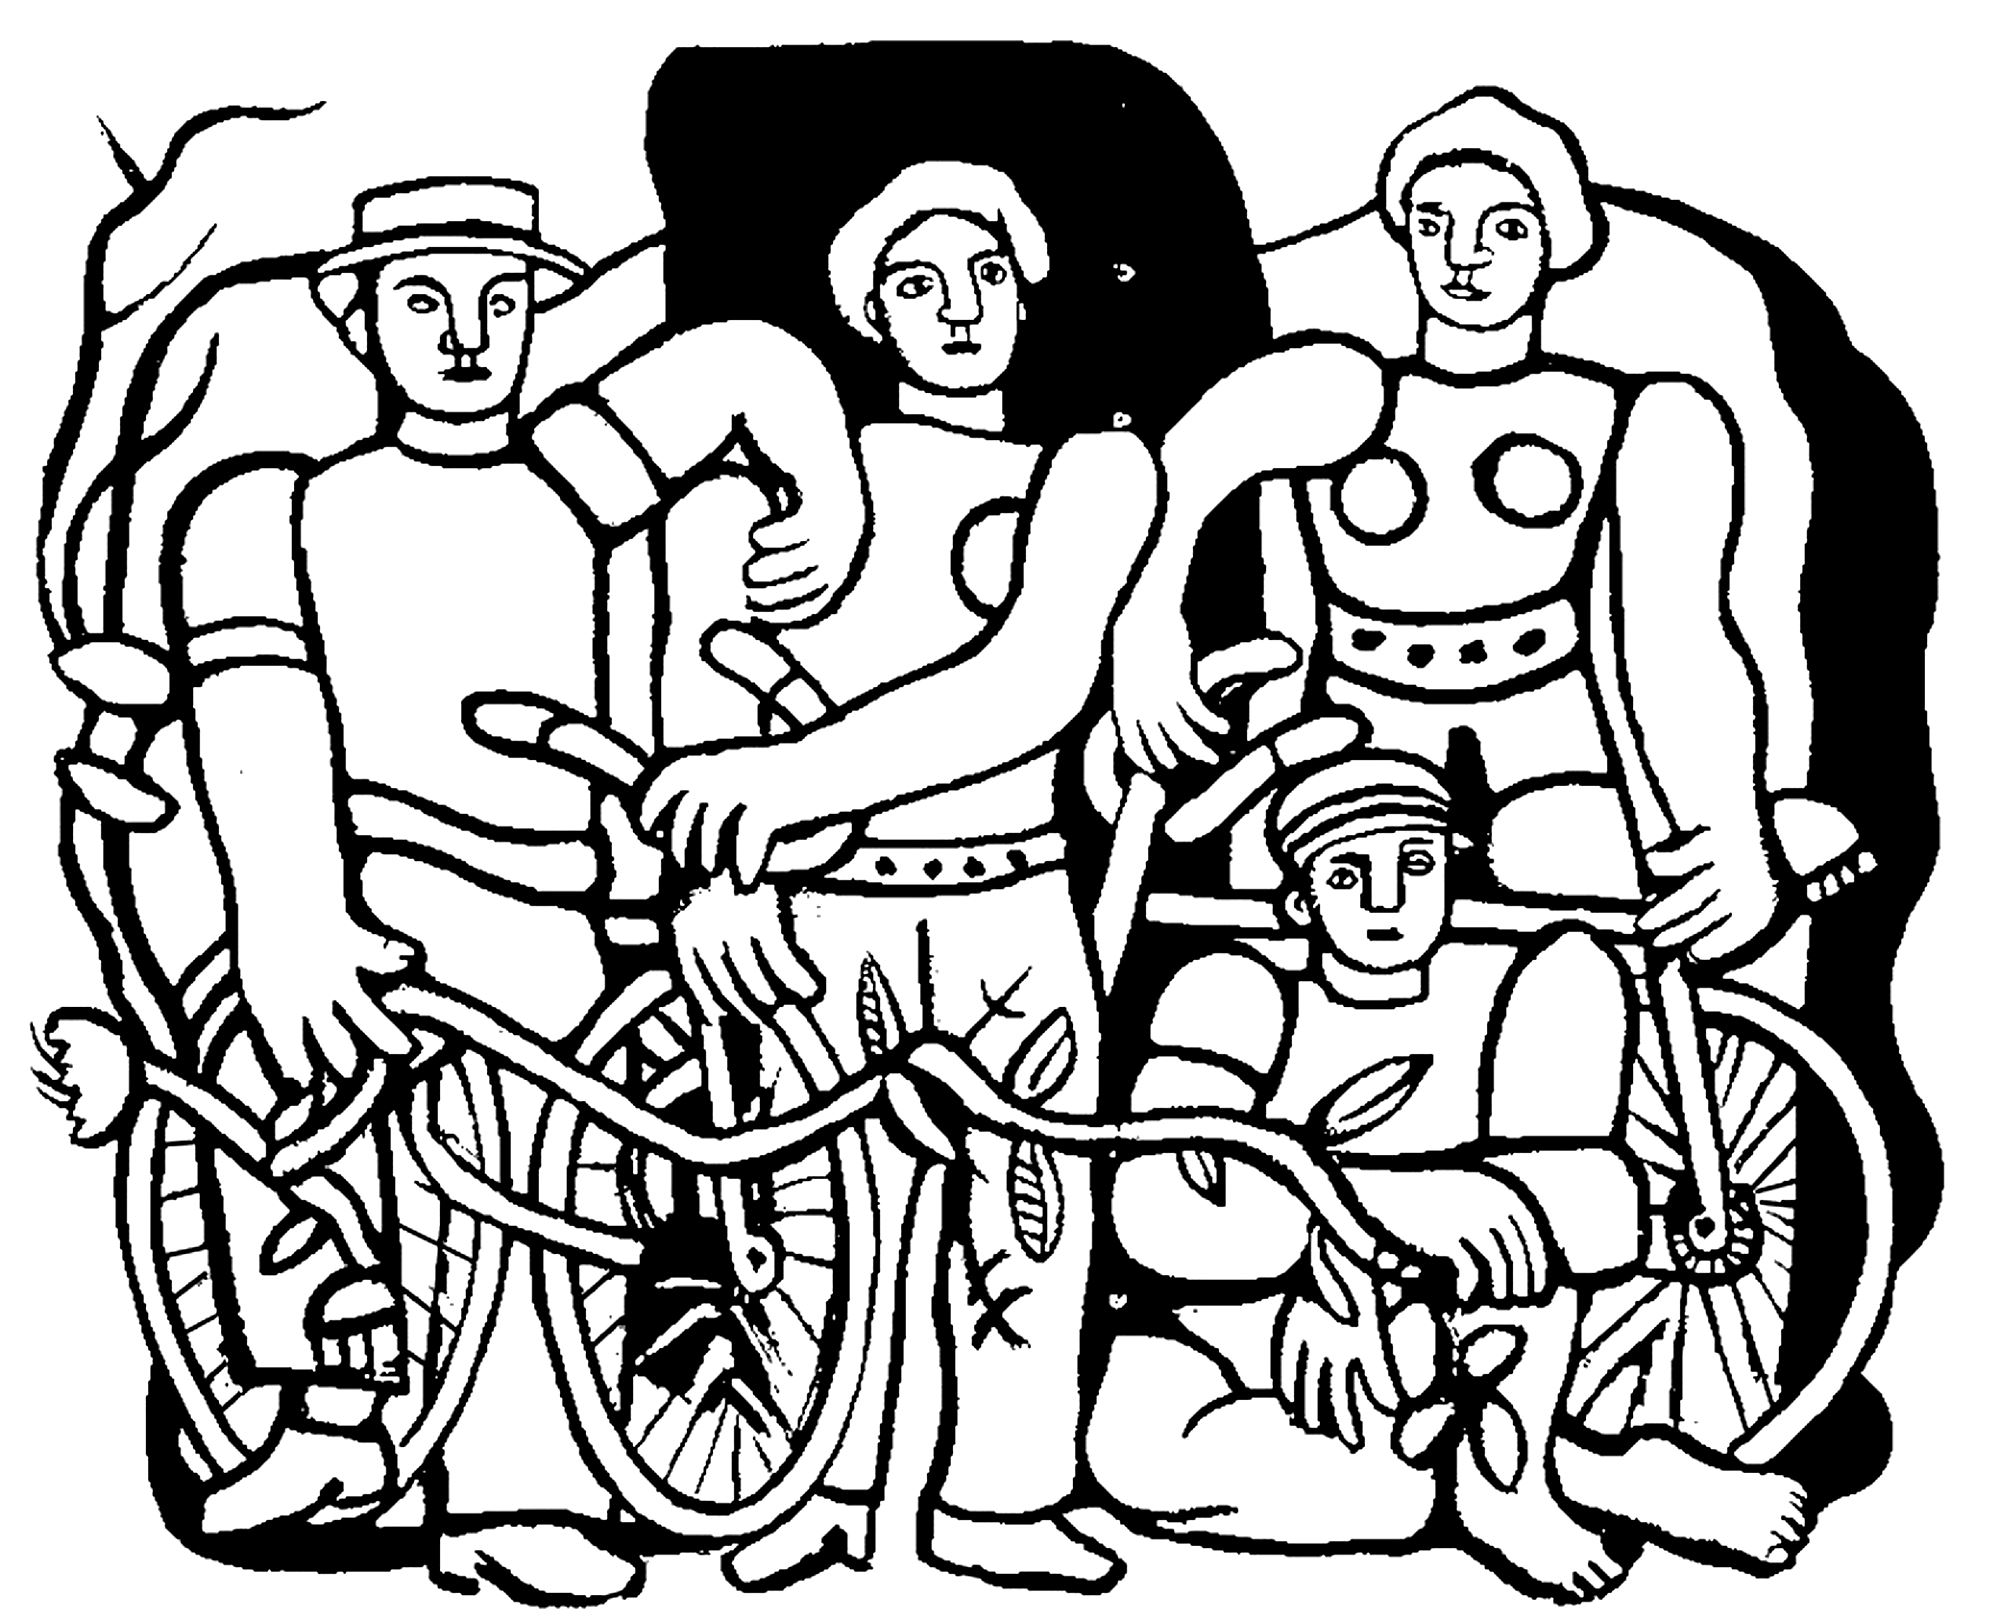 Coloración creada a partir del cuadro de Fernand Léger: La belle équipe (1944)